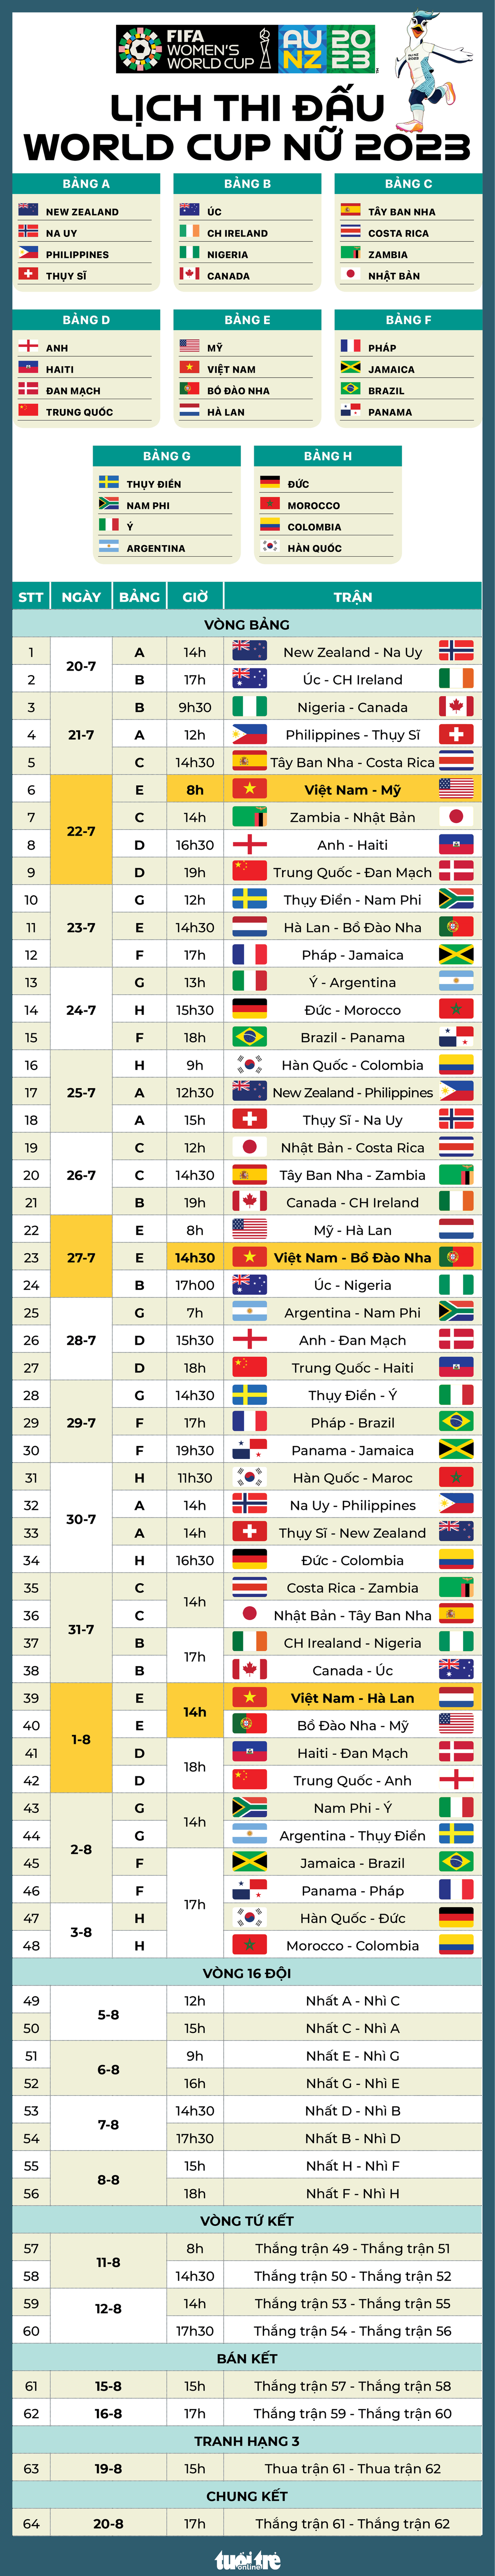 Lịch thi đấu toàn bộ 64 trận đấu ở World Cup nữ 2023 - Đồ họa: AN BÌNH